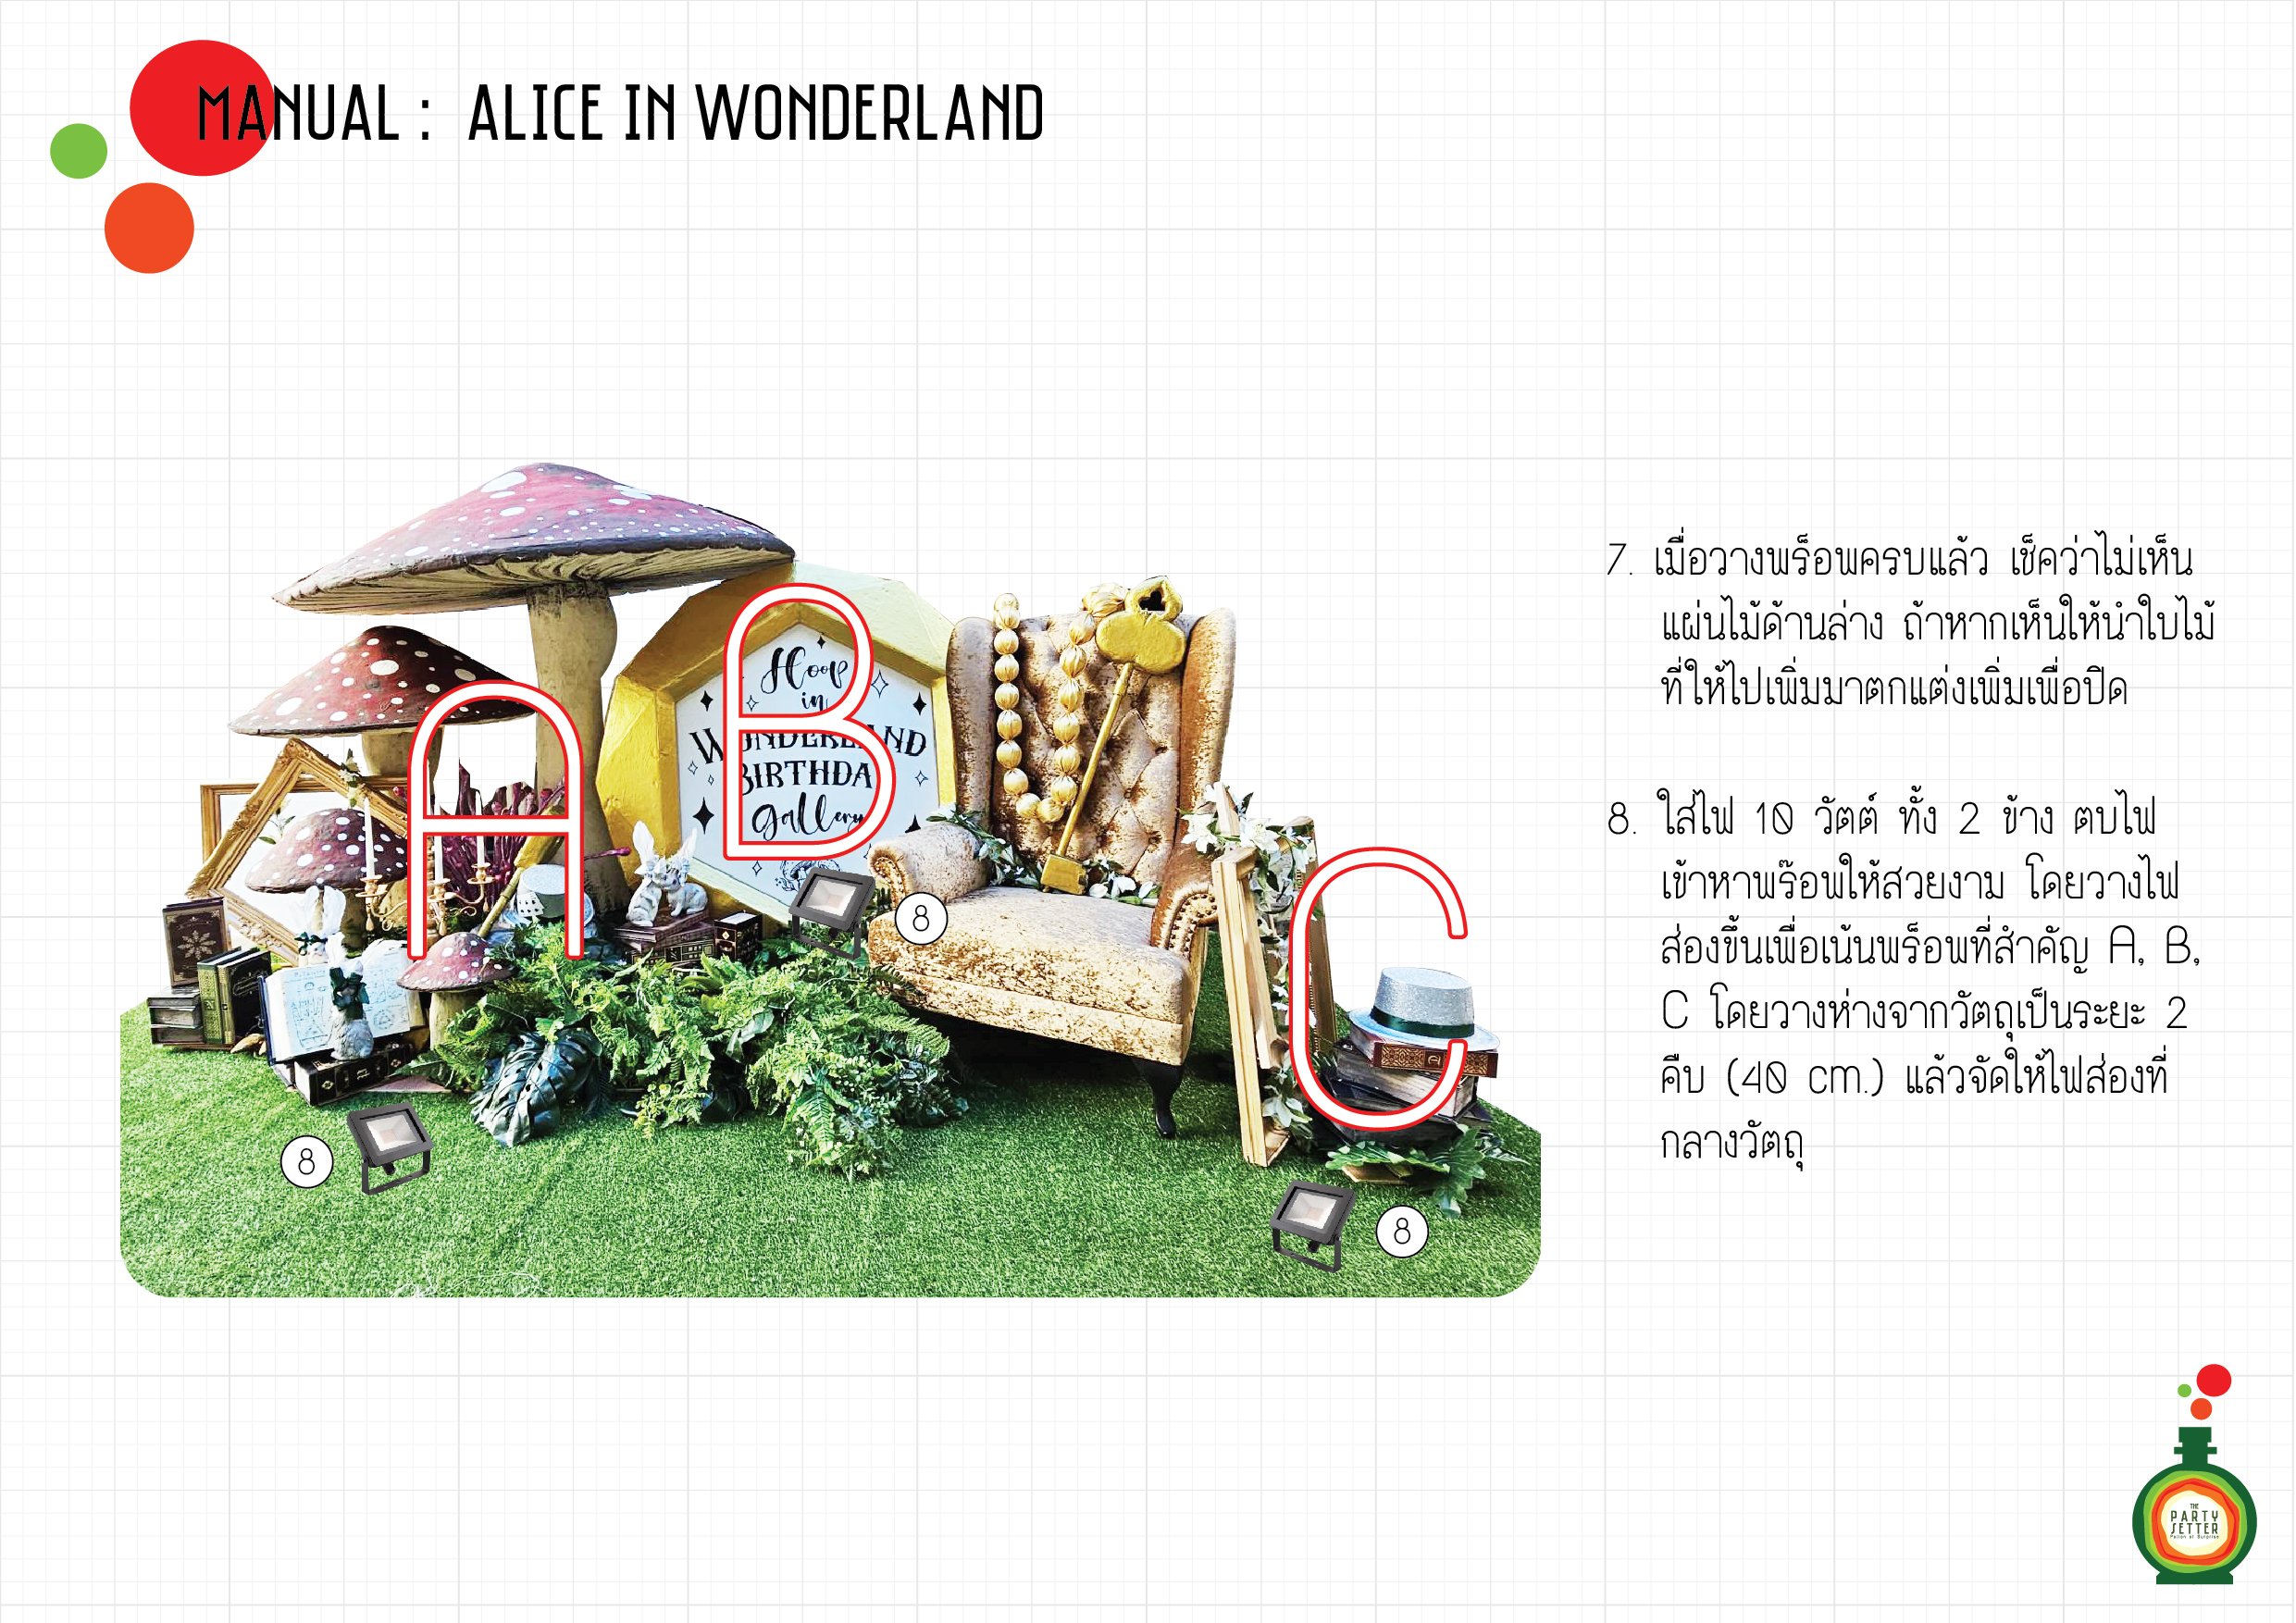 Manual_Alice in Wonderland_07-08-01.jpg